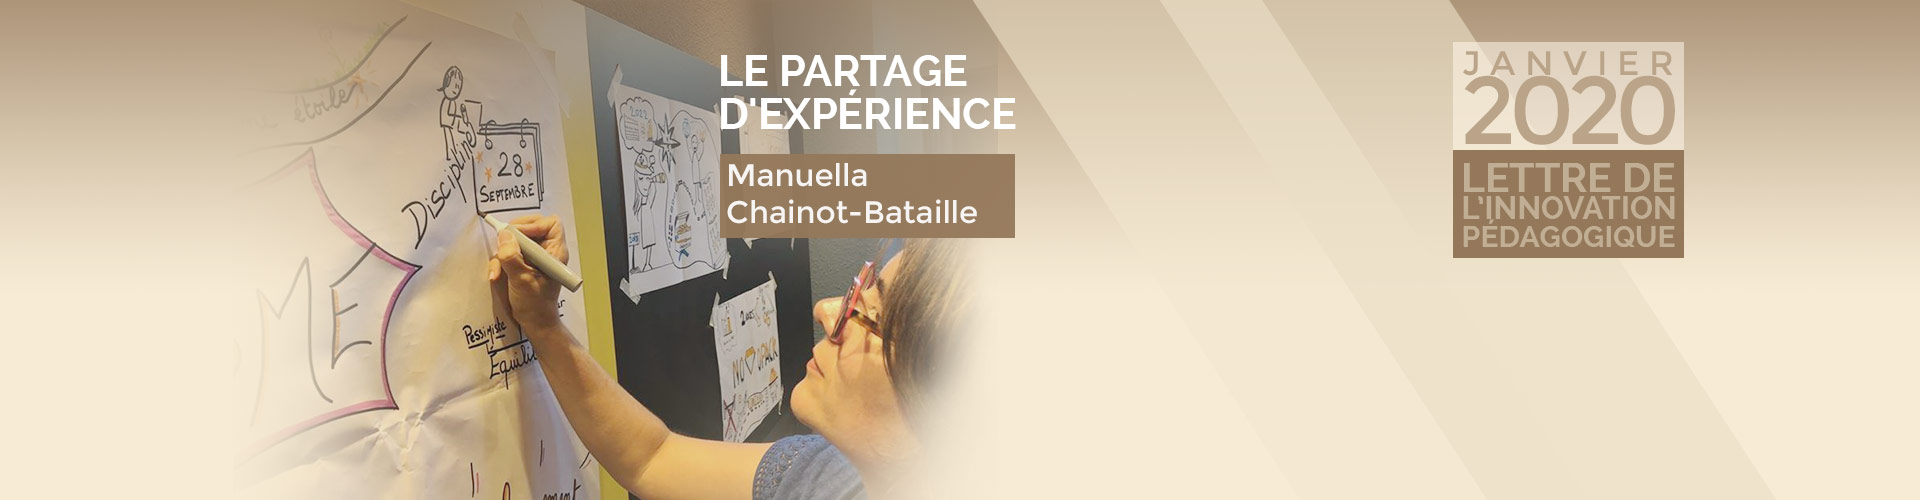 Pédagogie Agile par Manuella Chainot-Bataille 